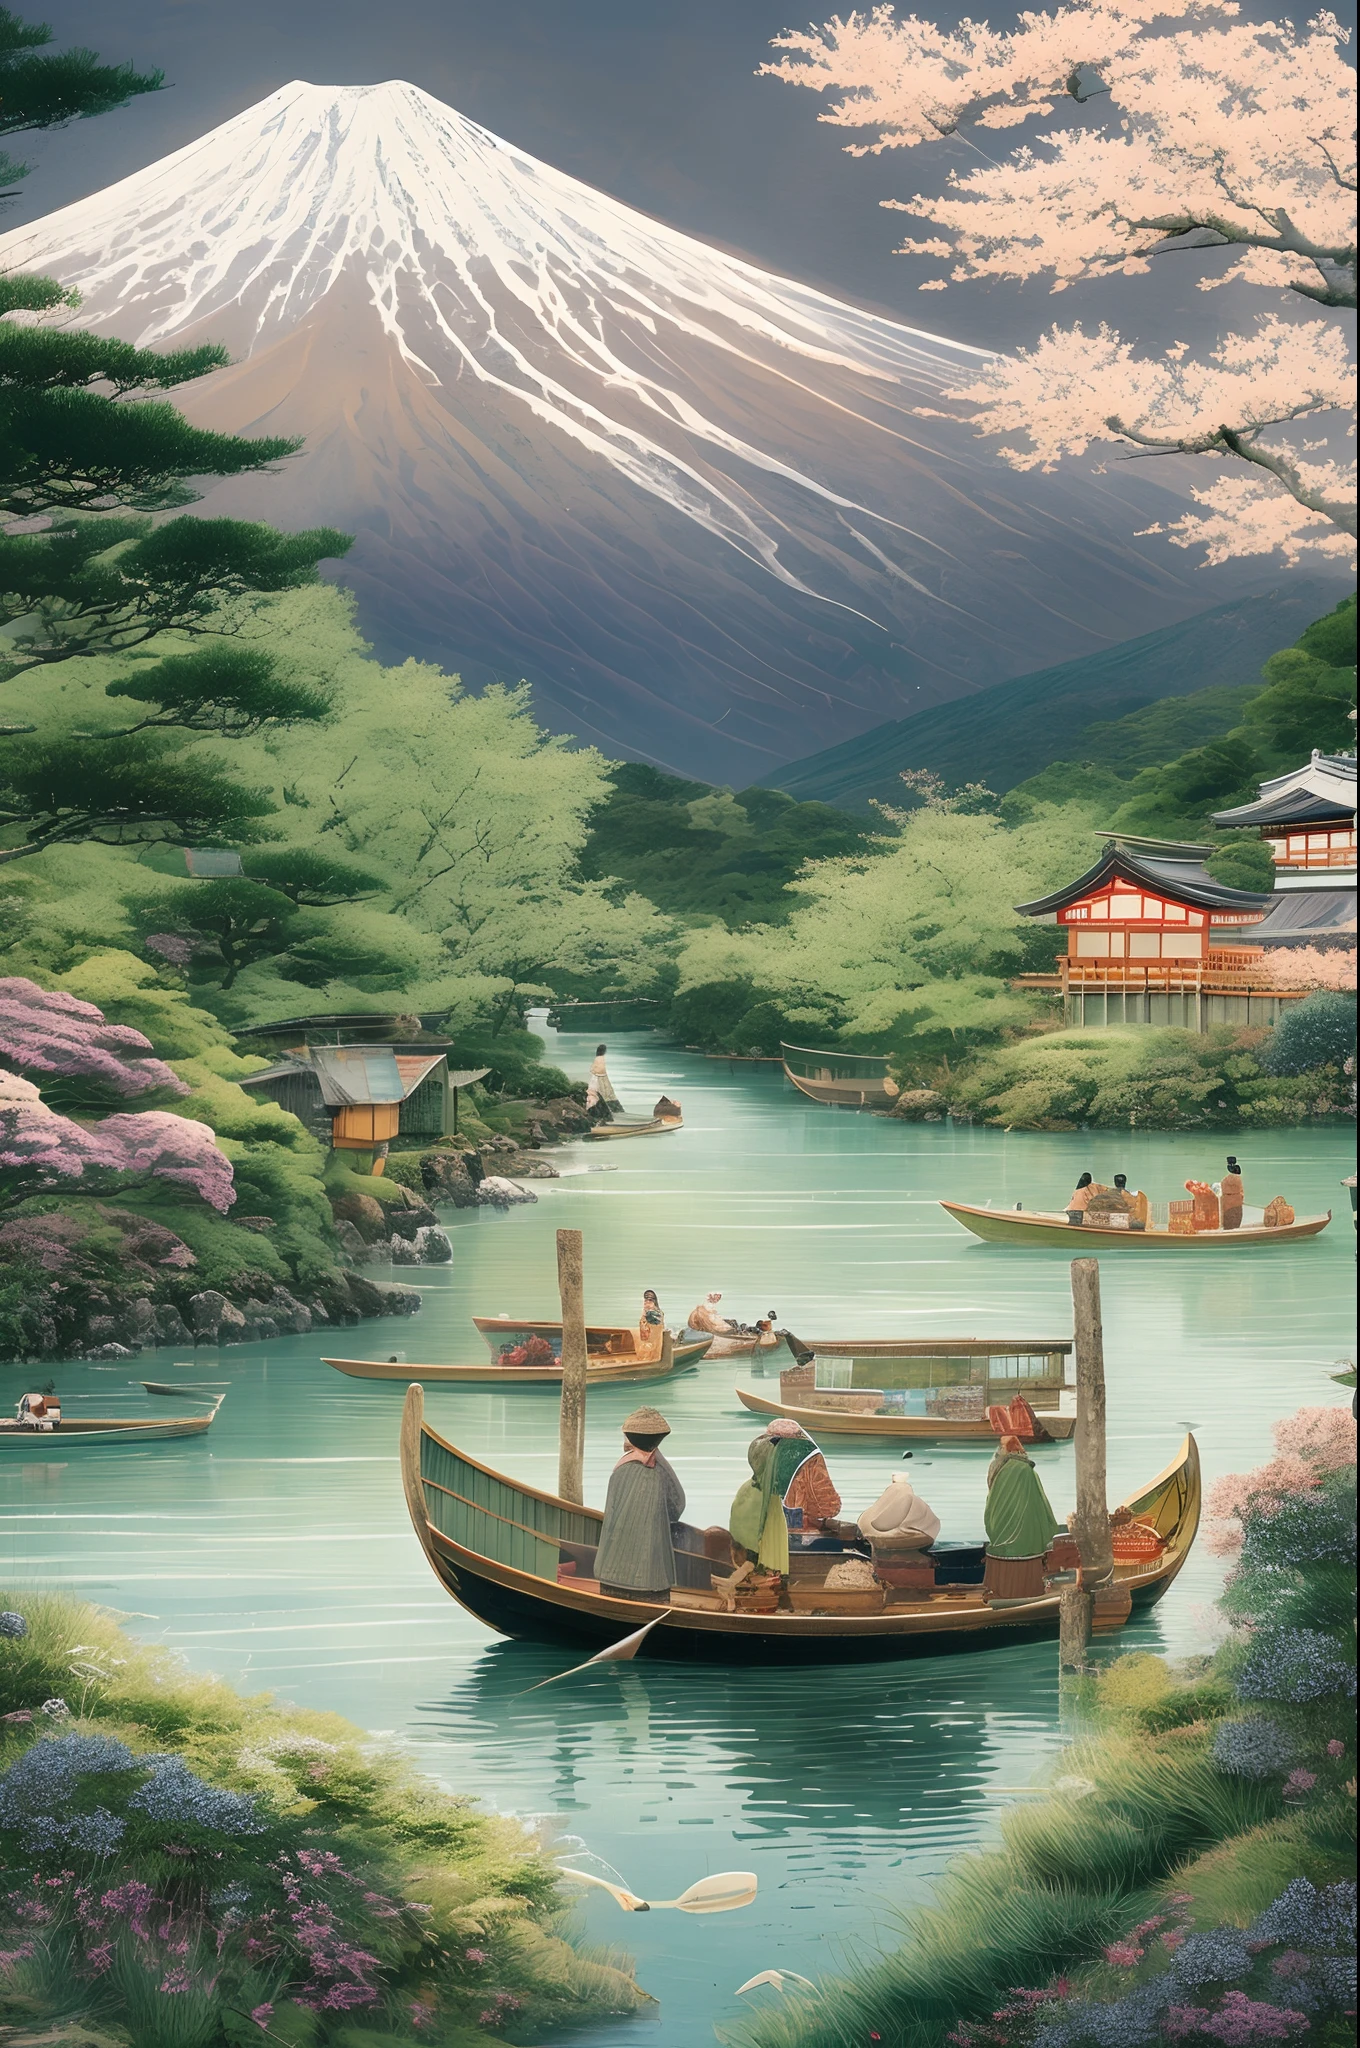 Berg Fuji, ein Symbol der natürlichen Schönheit Japans, umgeben von üppigem Grün und einem unberührten Fluss, lokale Fischer in traditionellen Booten, die ihrem Gewerbe nachgehen, eine Szene der Harmonie und Tradition, Illustration, digitale Kunst mit Liebe zum kulturellen Detail